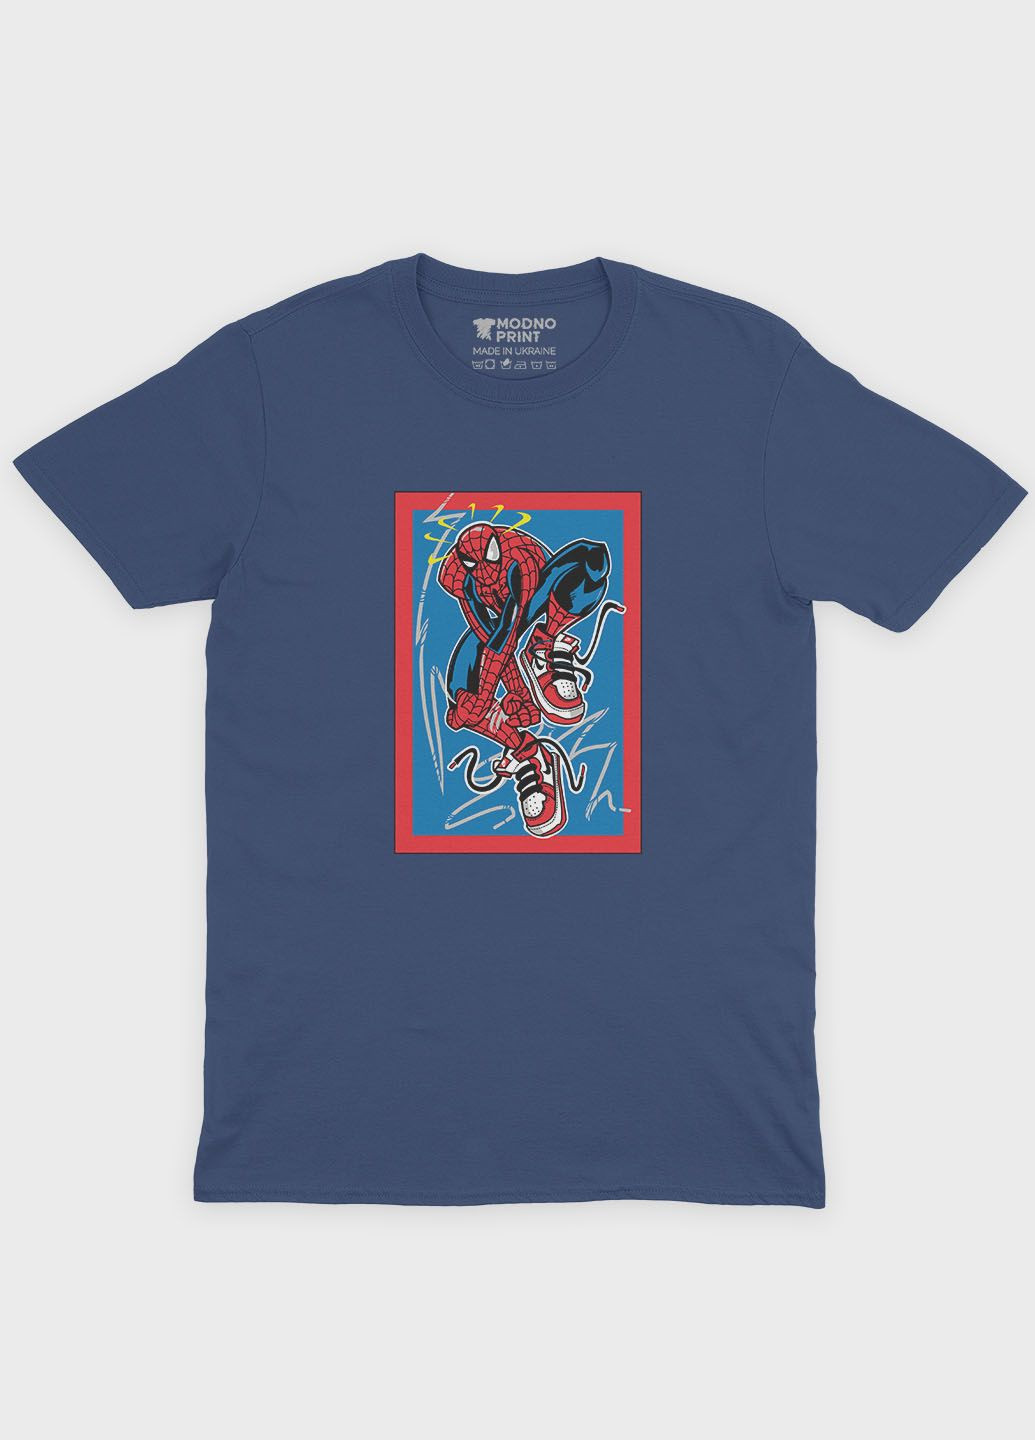 Темно-синяя демисезонная футболка для мальчика с принтом супергероя - человек-паук (ts001-1-nav-006-014-067-b) Modno